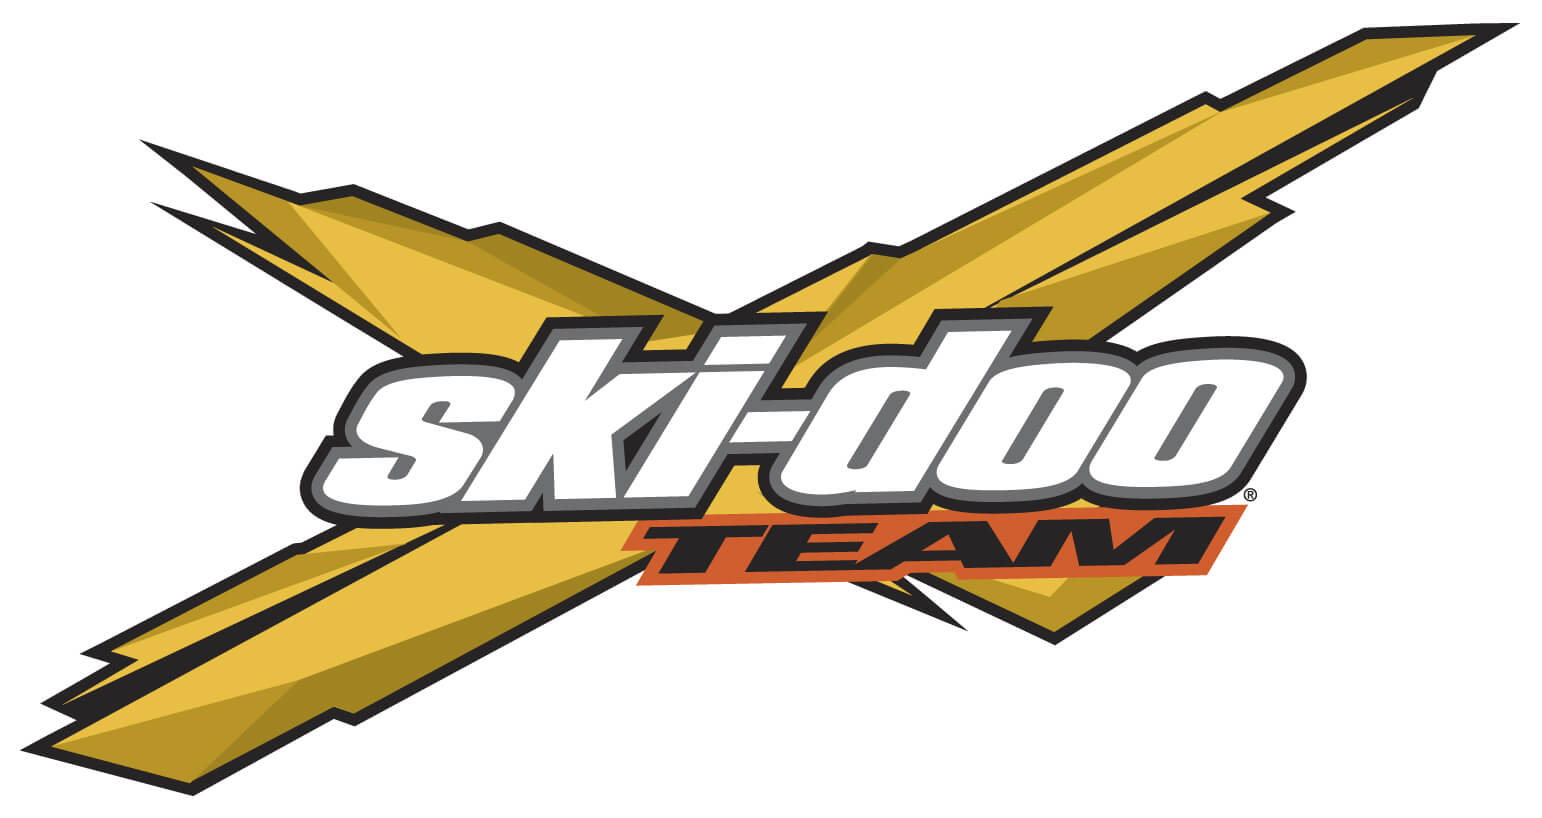 Ski-doo Team